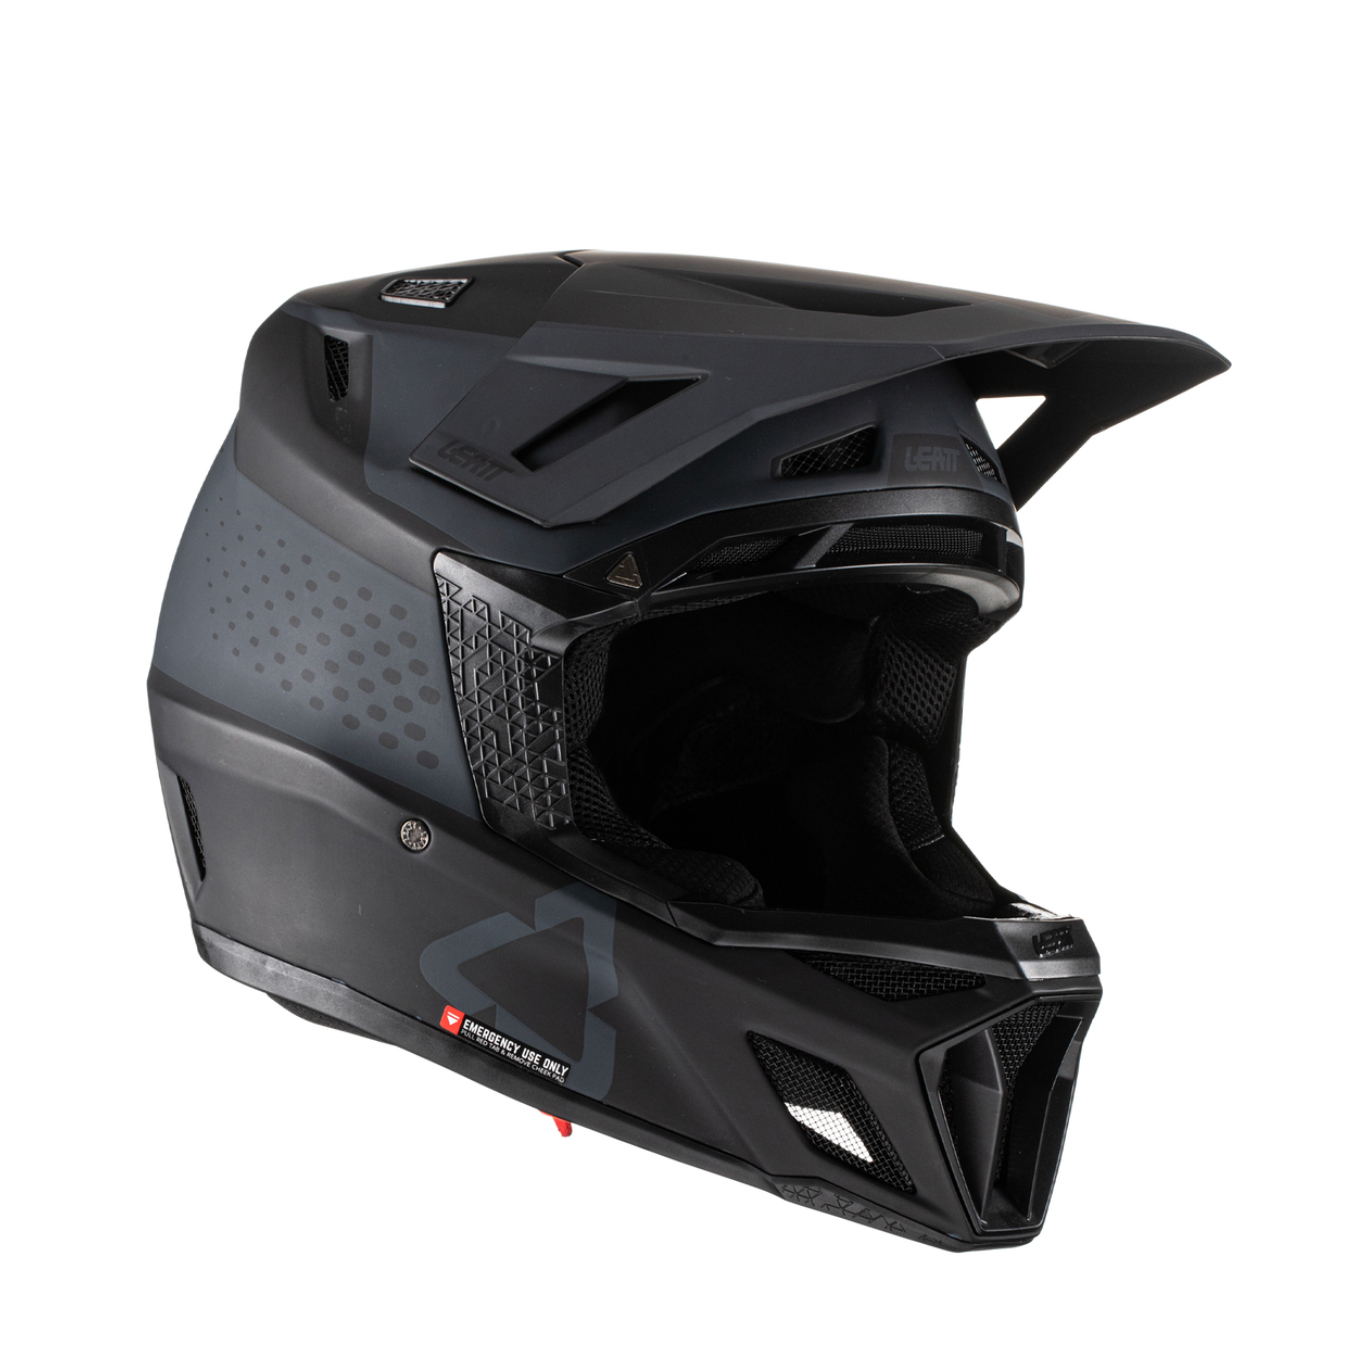 Leatt MTB 8.0 Full Face Helmet, X-Large (61-62cm), Black